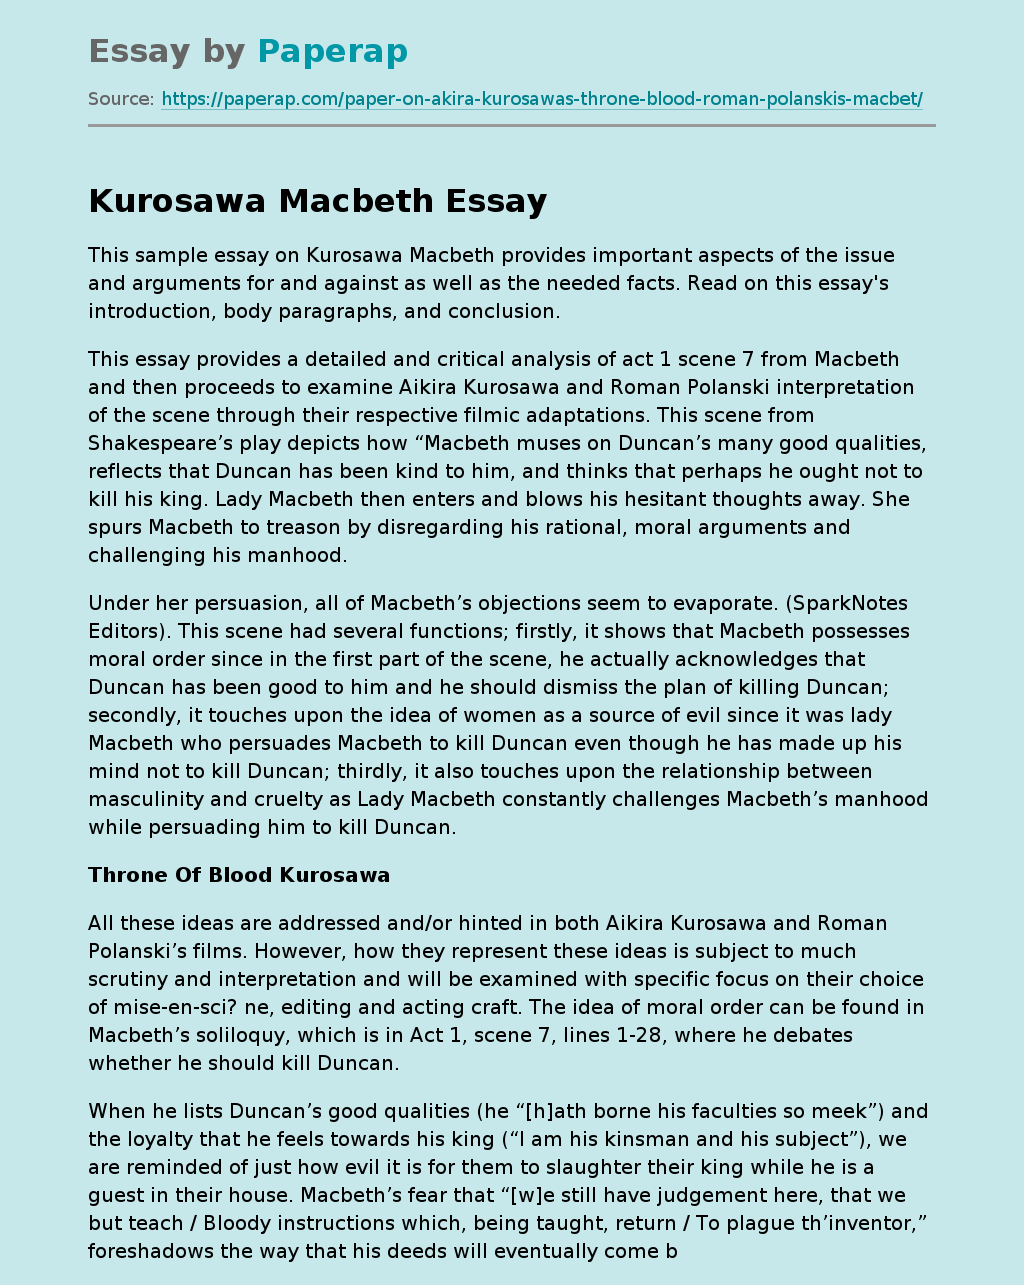 Kurosawa Macbeth Throne Of Blood Kurosawa